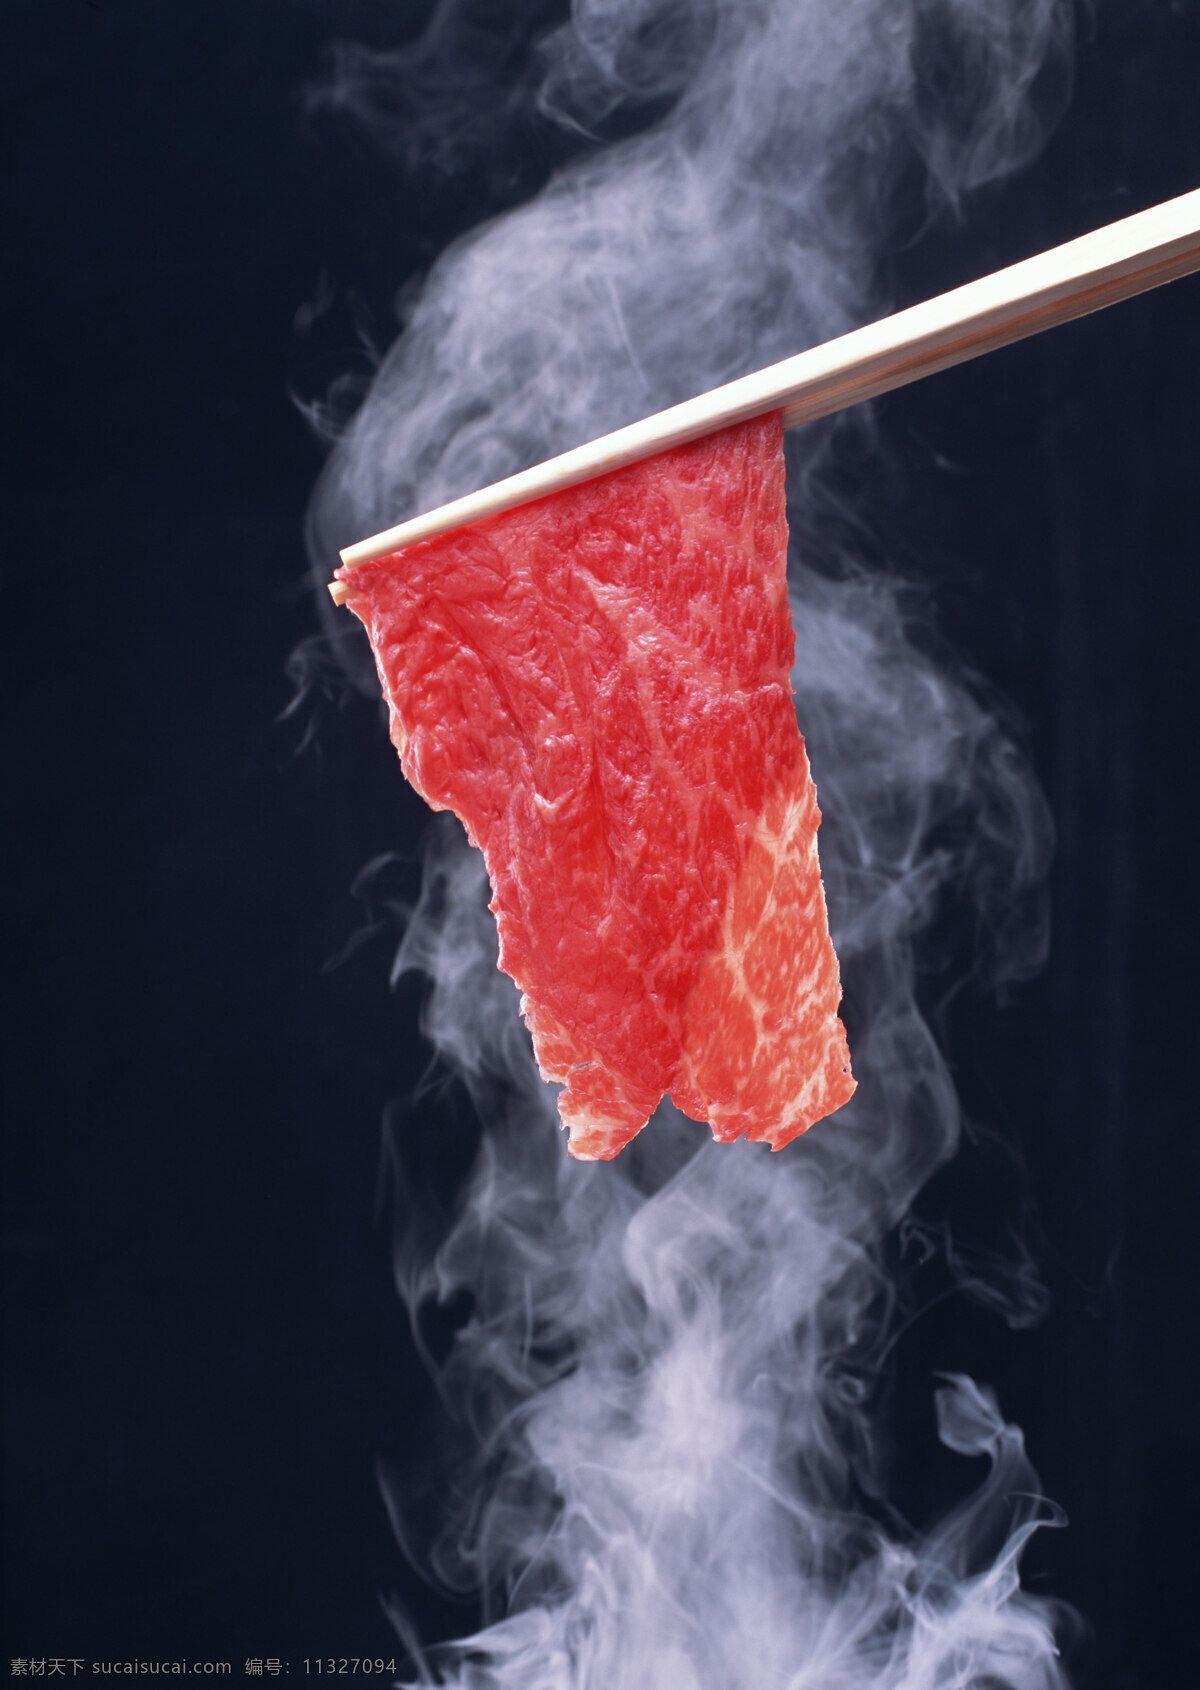 筷子 夹 住 瘦肉 肉 肉类 鲜肉 烤肉 肉片 餐饮美食 食材原料